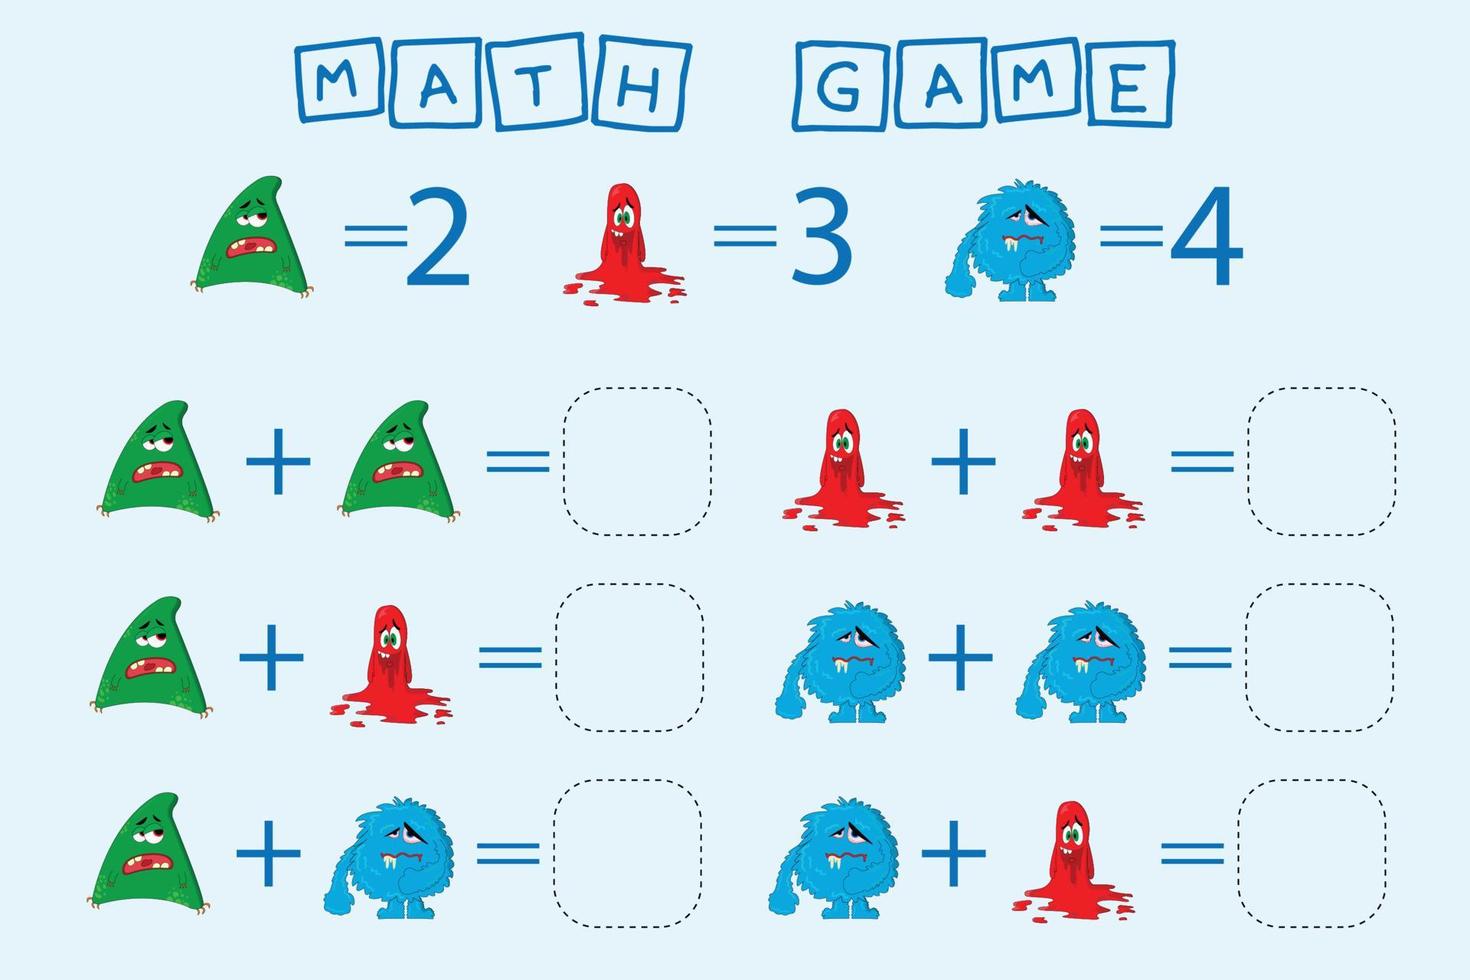 counting game with monsters. Preschool worksheet, kids activity sheet, printable worksheet vector